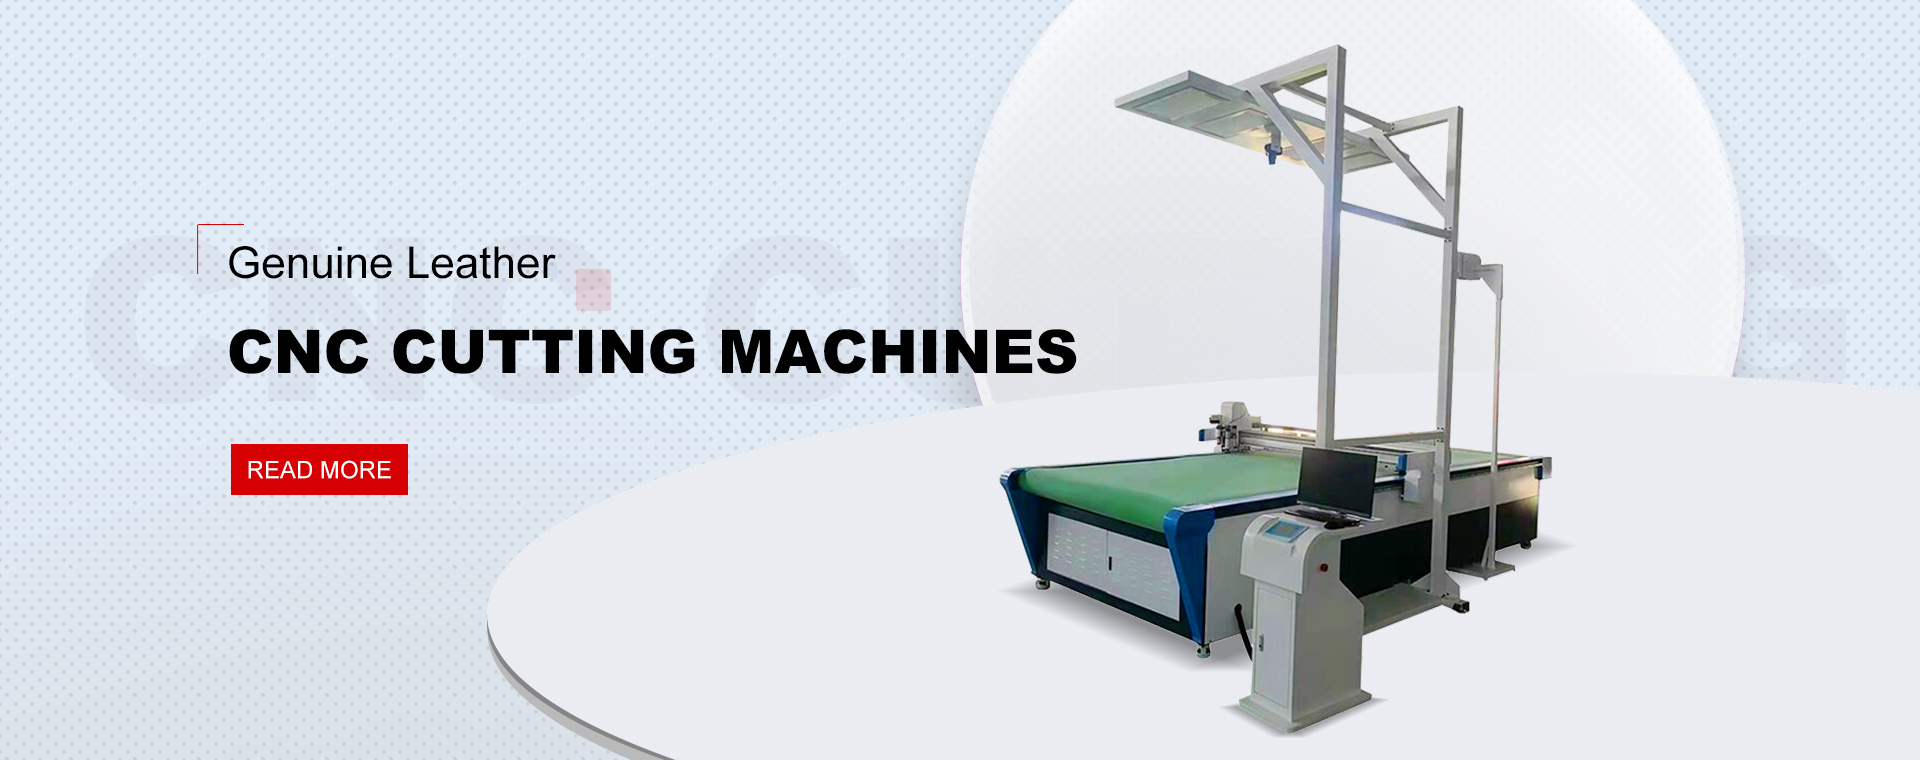 CNC-Schneidemaschine für die digitale Kartonindustrie